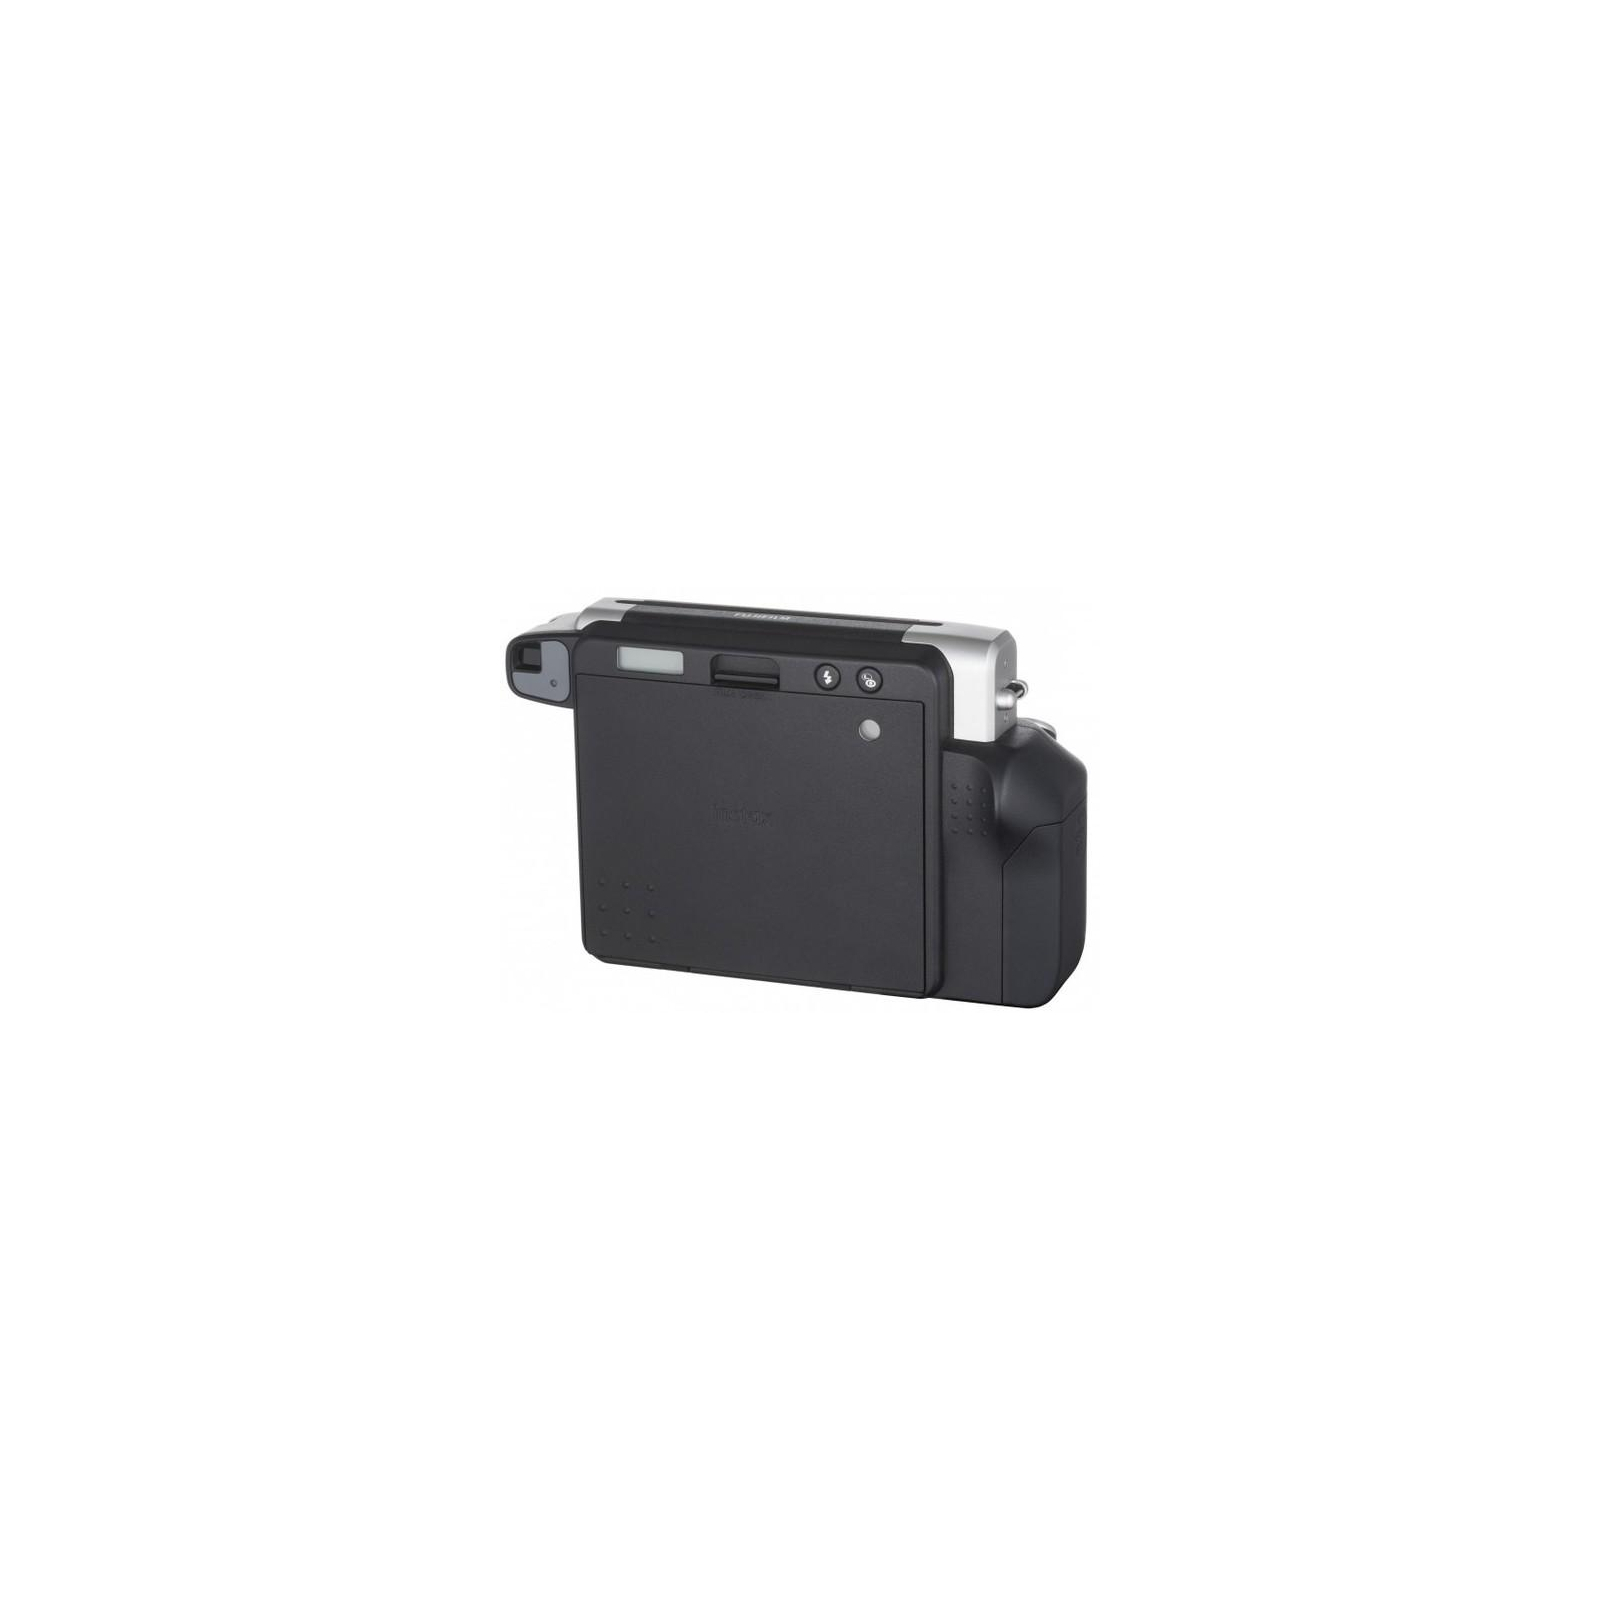 Камера моментальной печати Fujifilm Instax WIDE 300 Instant camera (16445795) изображение 4